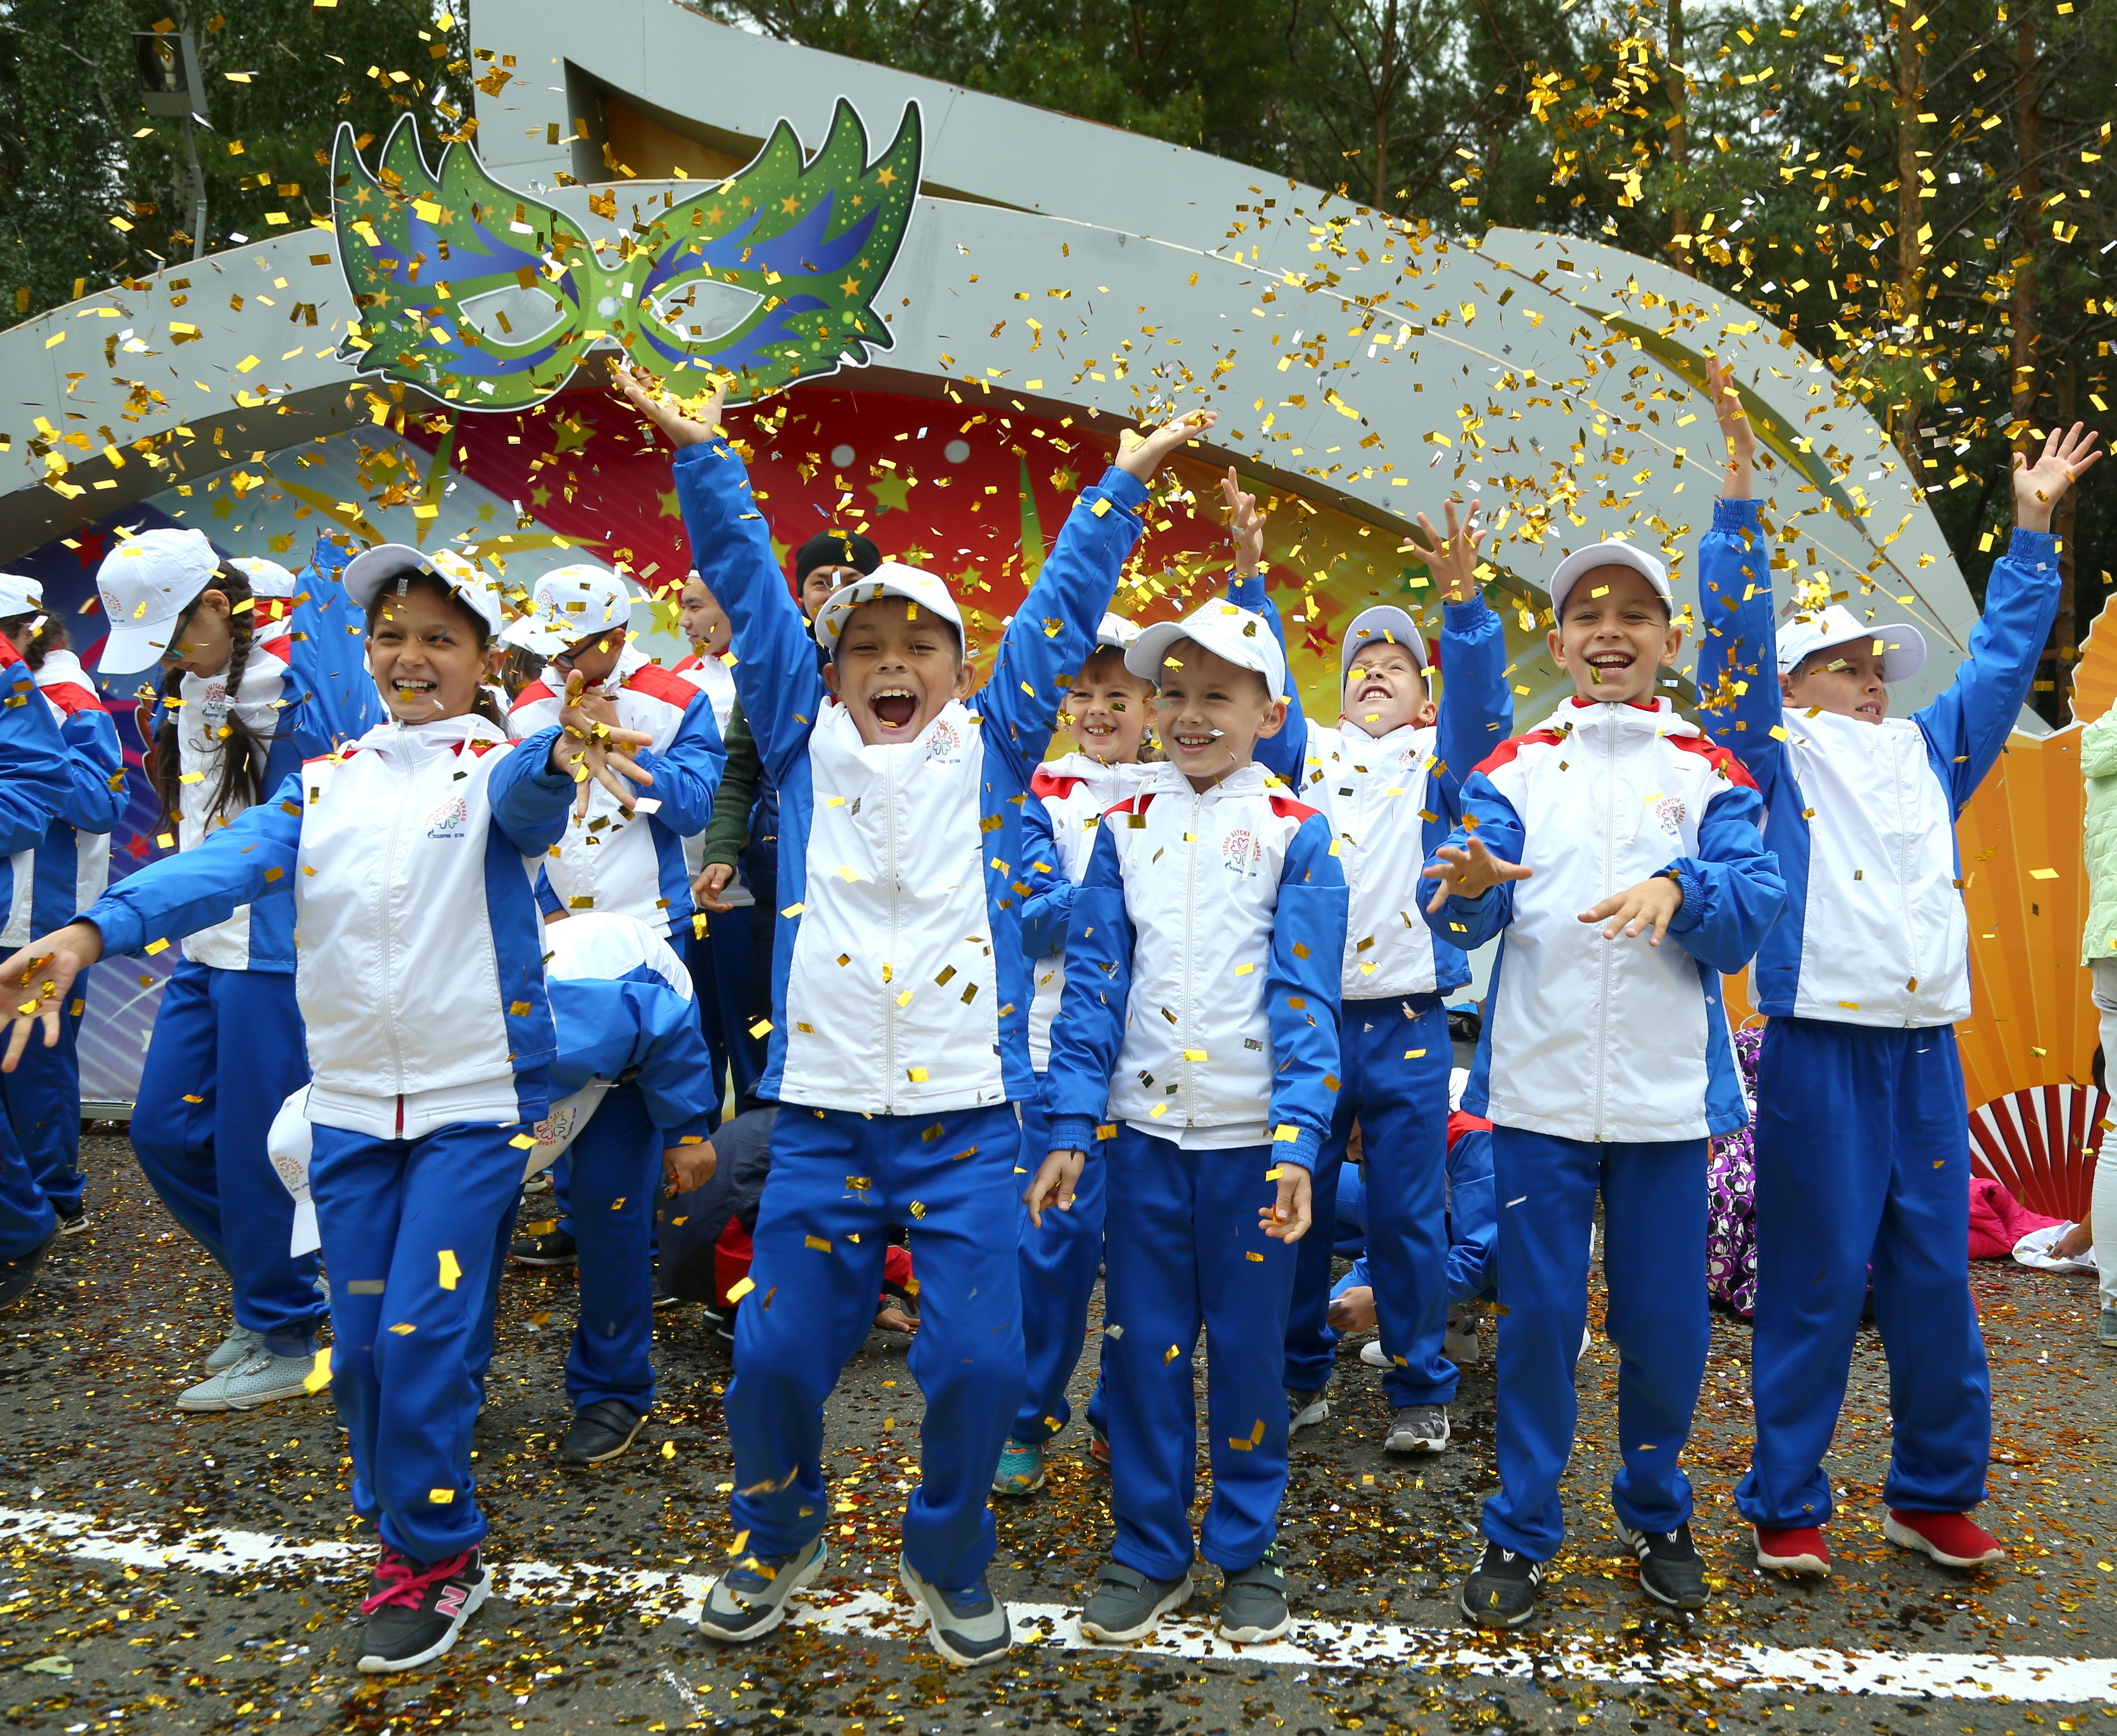 Gazprom Dobycha Orenburg holds 14th Warmth of Children’s Hearts Festival